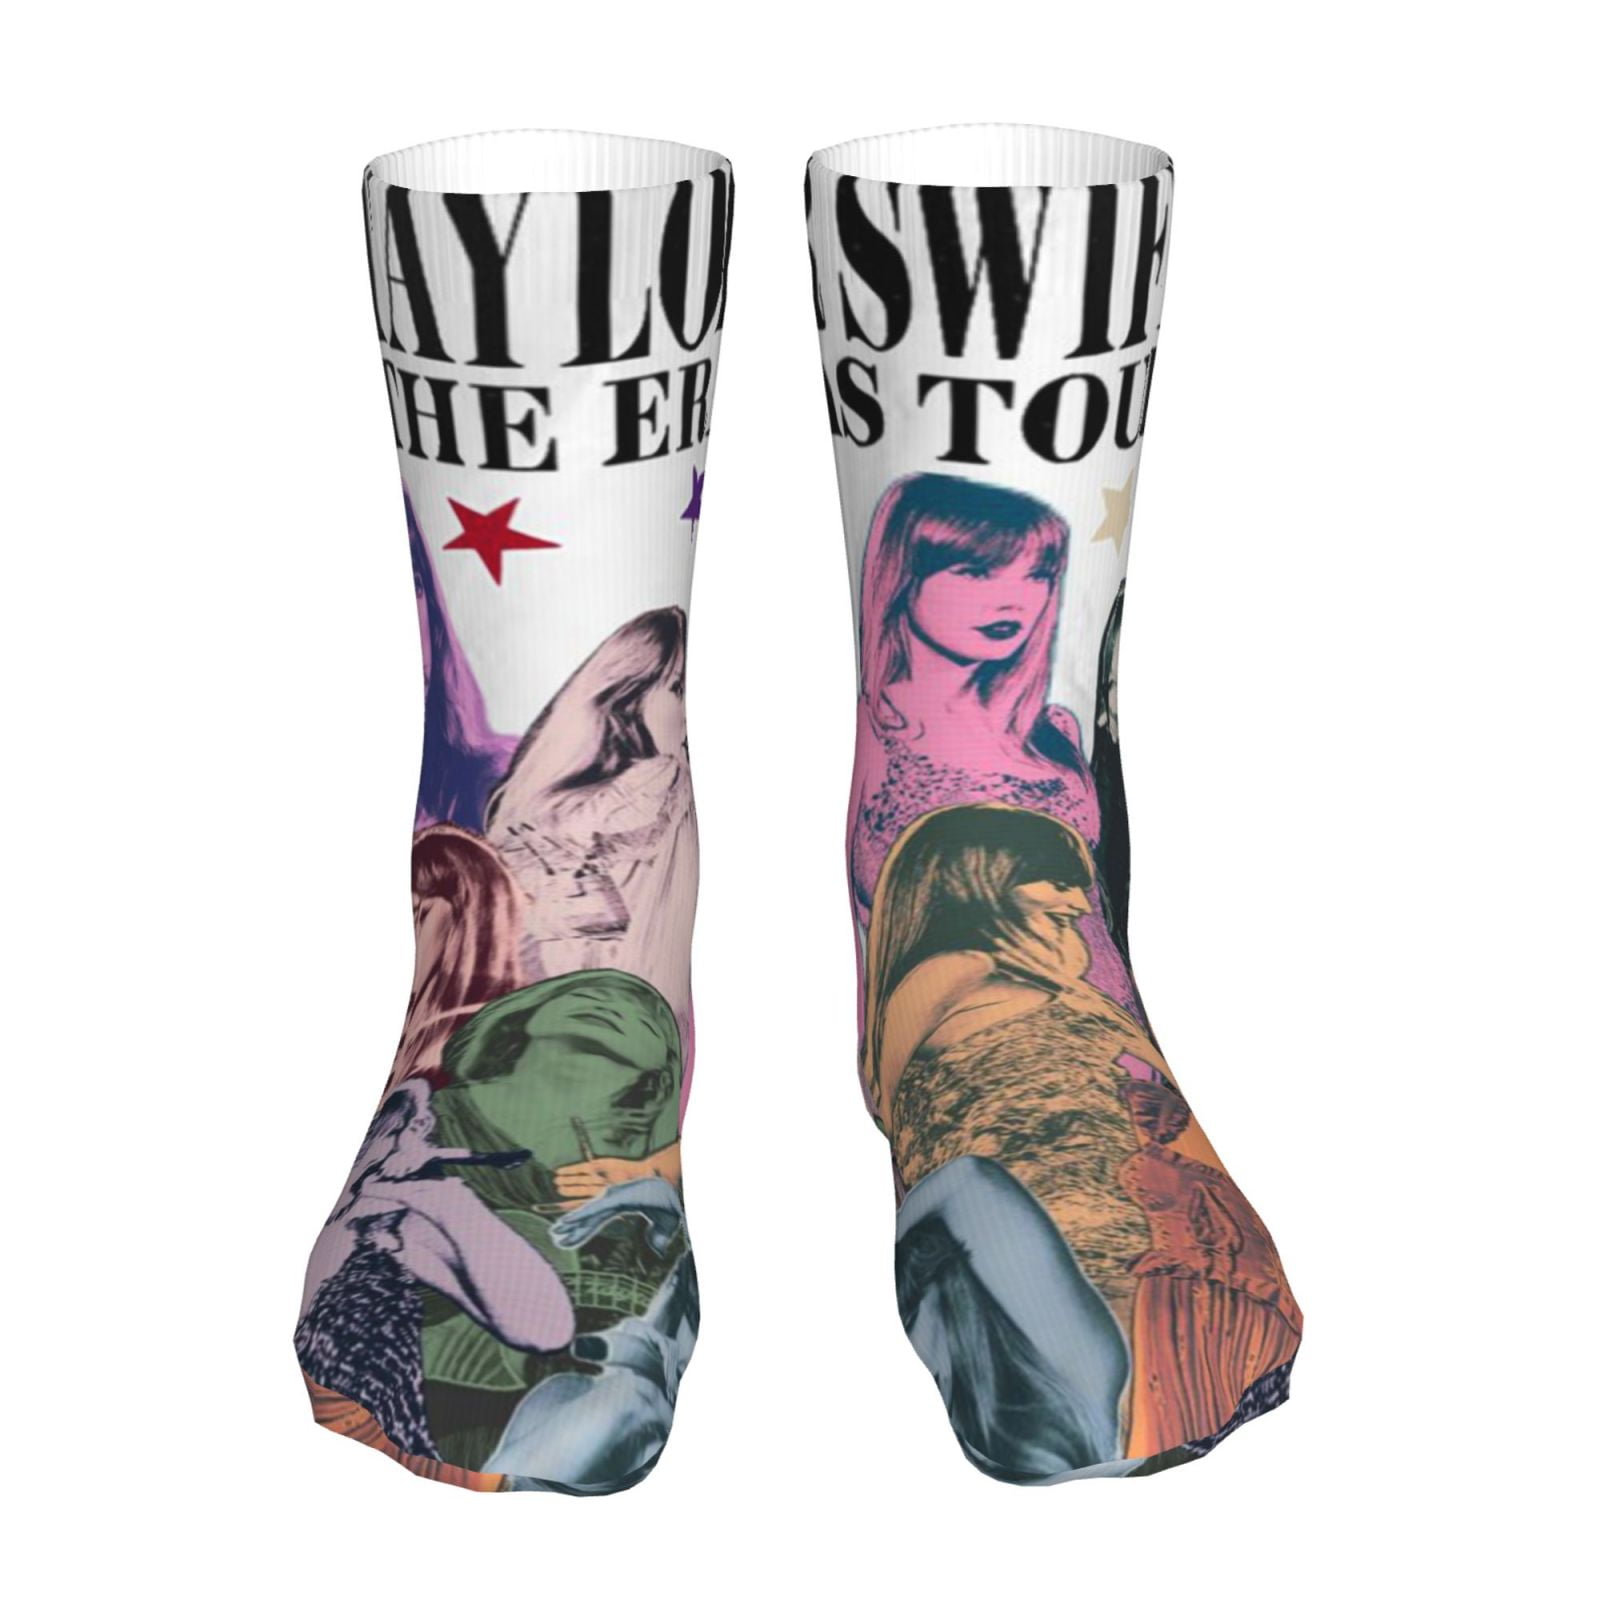 Taylor Swift Socks Popular Singer Novelty Stockings Unisex